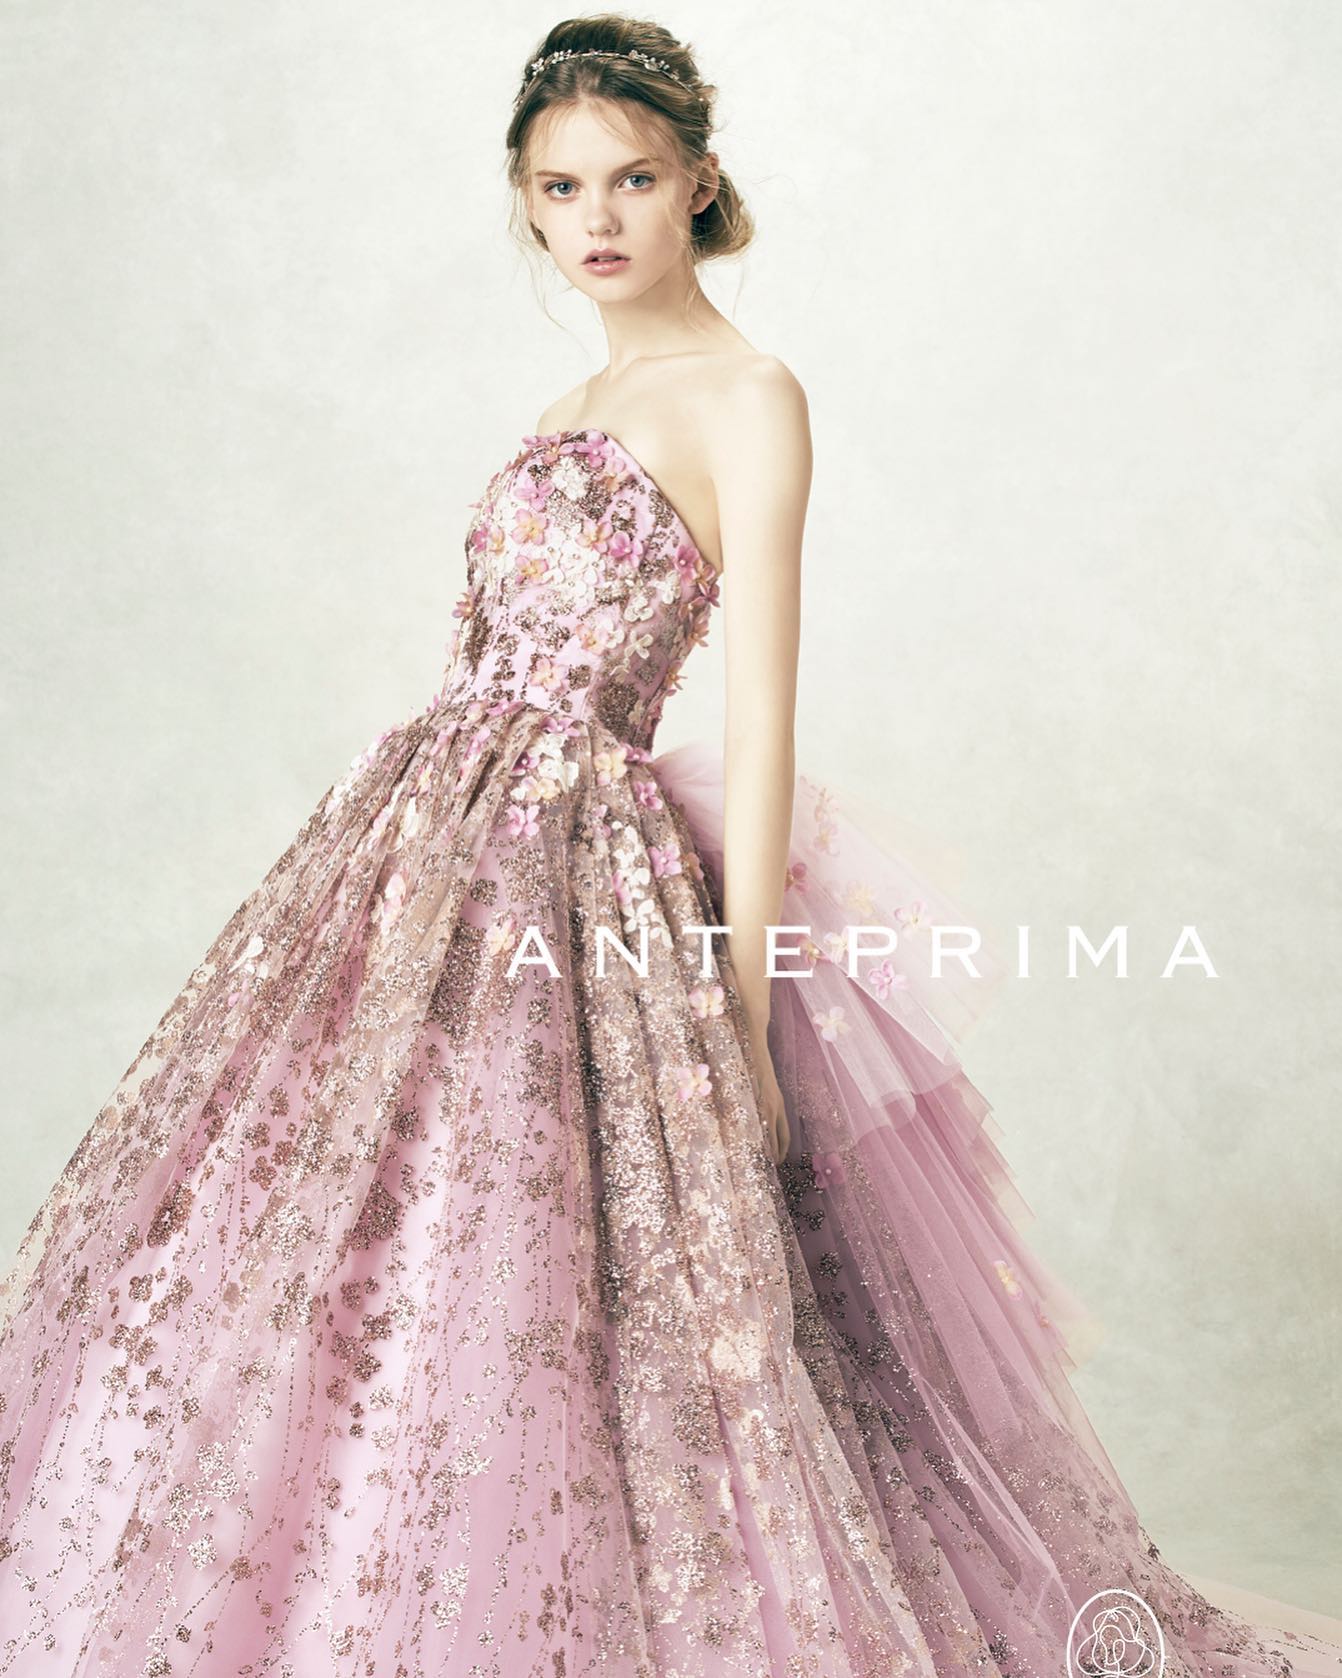 ・今日は人気のアンテプリマのドレスをご紹介カラードレス 取り寄せ商品【ＡＮＴＥＰＲＩＭＡ】ＡＮＴ0180 pinkＡＮＴＥＰＲＩＭＡ(アンテプリマ）ＡＮＴ0180 pink ※ご試着をご希望の場合は、ご予約時にお申し出ください。 華やかな大人パステルで彩る極上スウィートな一着 立体感のあるスピングル加工のフランス製あじさいモチーフをあじさい柄のグリッターにのせ、さらに立体フラワーをプラスした３Ｄ加工を施しています バックフリルのボリューム感はプリンセス気分を味わえます・#wedding #weddingdress #bridalhiro #amteprima#ウェディングドレス #プレ花嫁 #ドレス試着　#ヘアメイク #結婚式  #ドレス選び #前撮り #後撮り #フォトウェディング　#ウェディングヘア  #フォト婚 #前撮り写真　#ブライダルフォト #カップルフォト #ウェディングドレス探し #ウェディングドレス試着　#レンタルドレス #ドレスショップ #家族婚 #ブライダルヒロ #ゼクシィ #プリンセスライン #ドレス迷子 #アンテプリマ